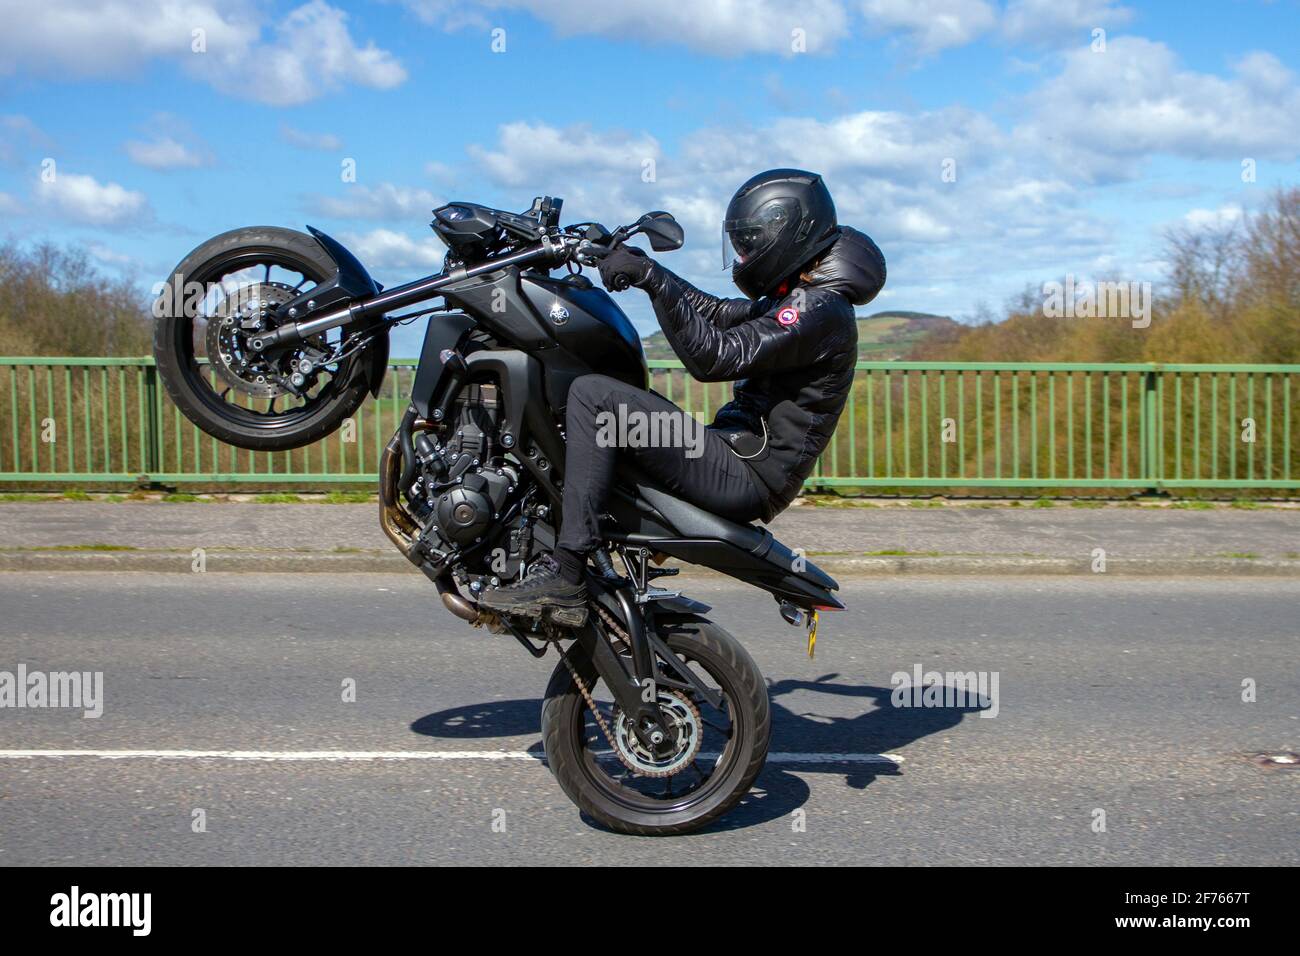 Trucco motociclistico immagini e fotografie stock ad alta risoluzione -  Alamy